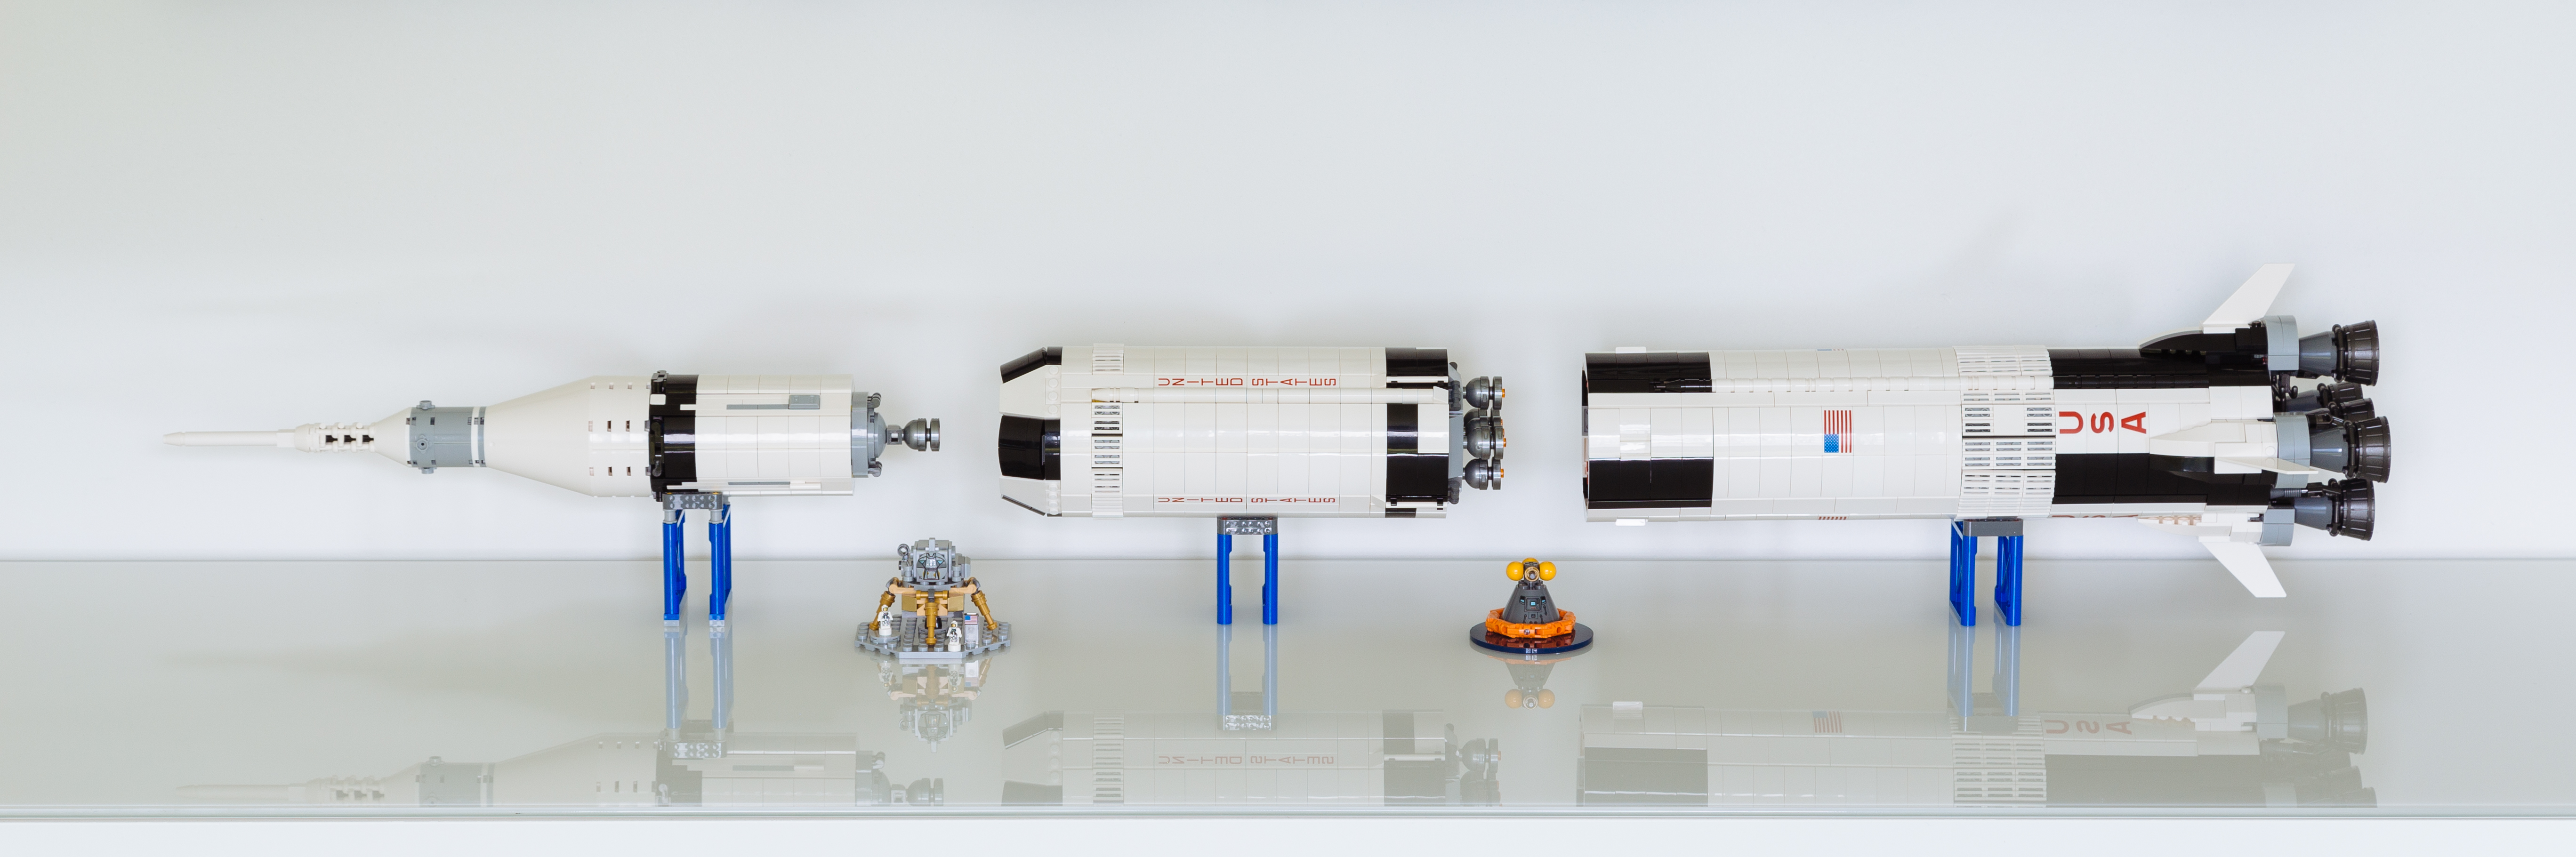 20170611_LEGO_SaturnV-1